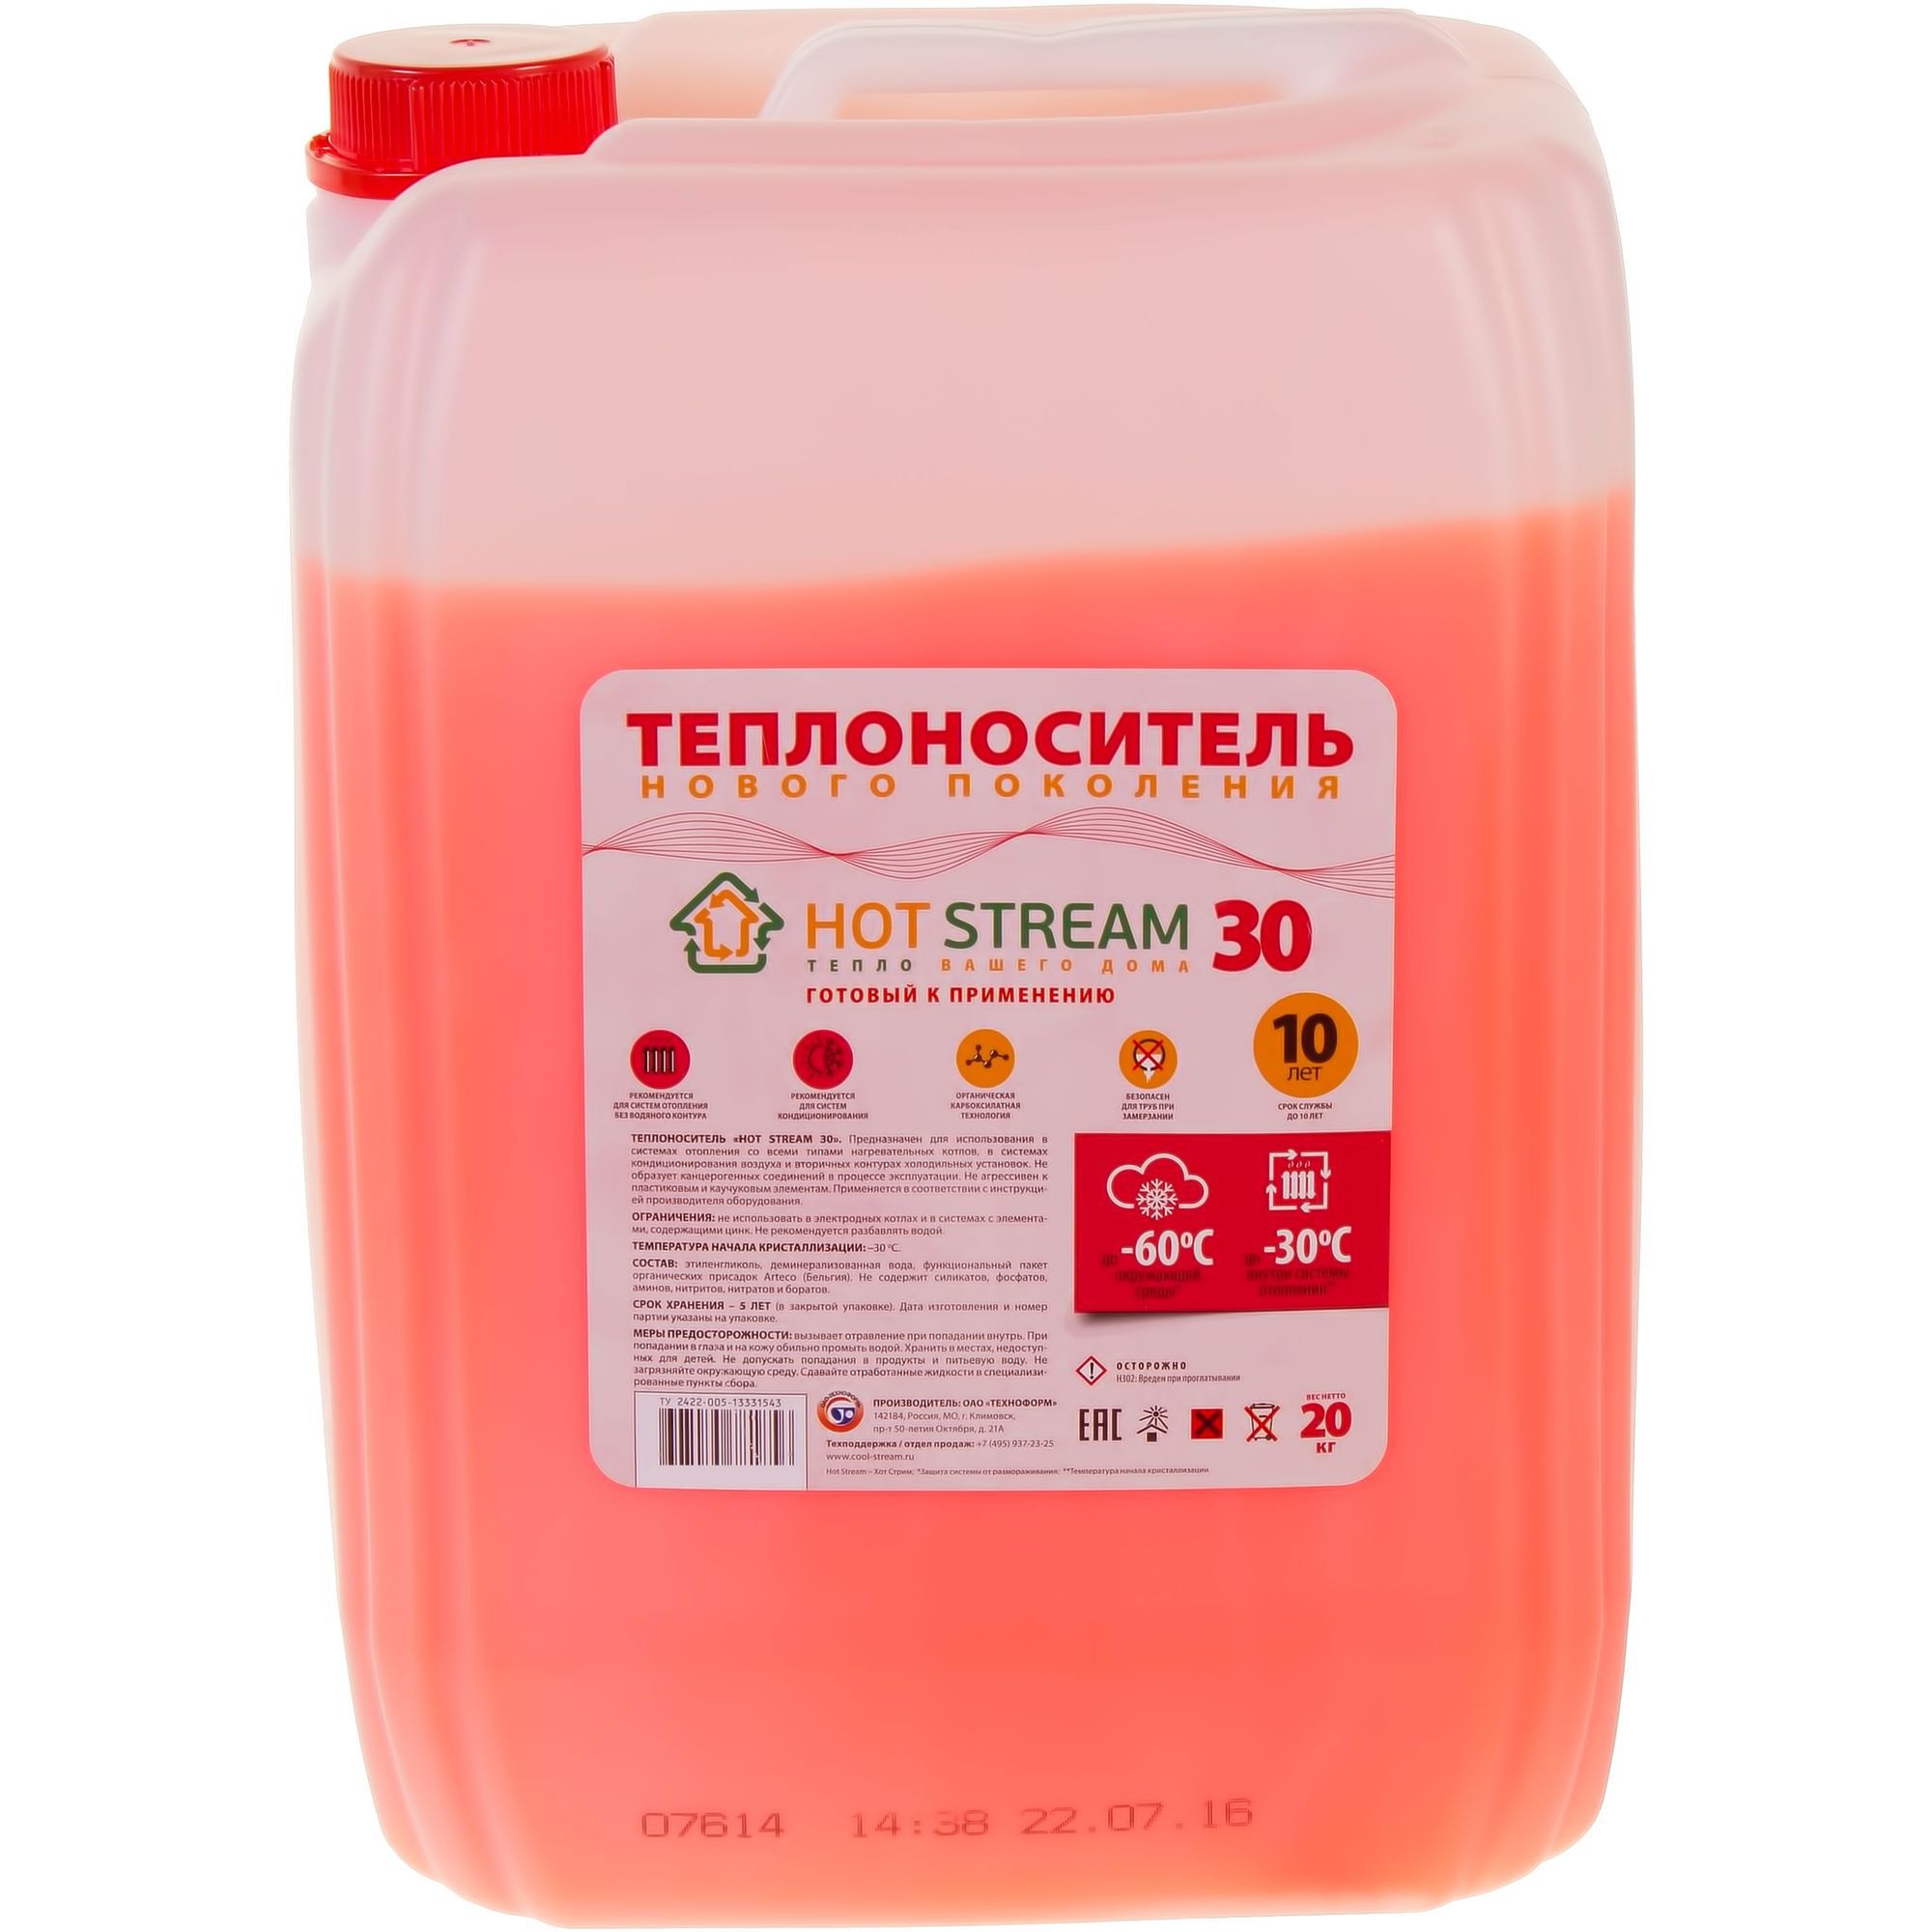  Hot Stream HS-010104 -30°C 20 кг этиленгликоль по цене .